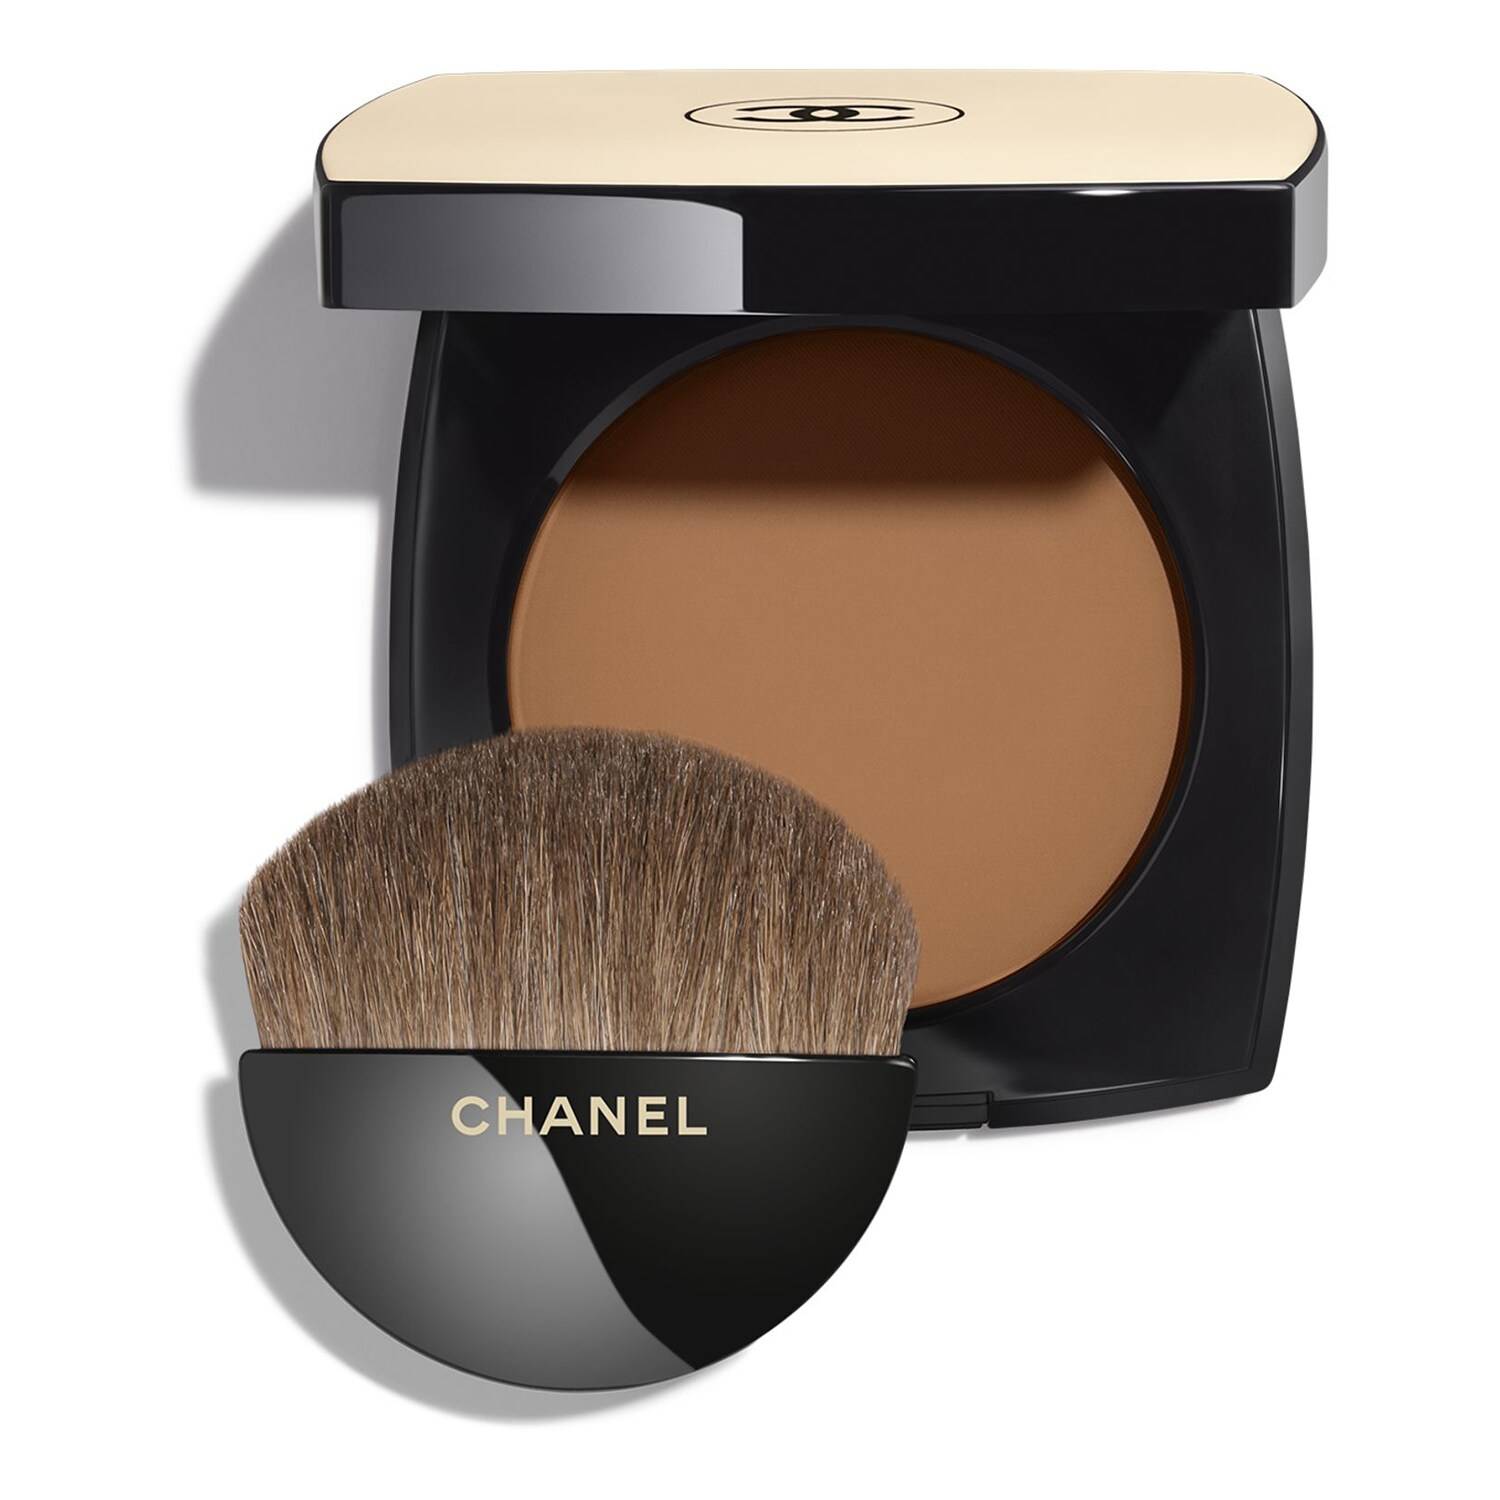 Chanel Les Beiges Healthy Glow Powder 12G B110